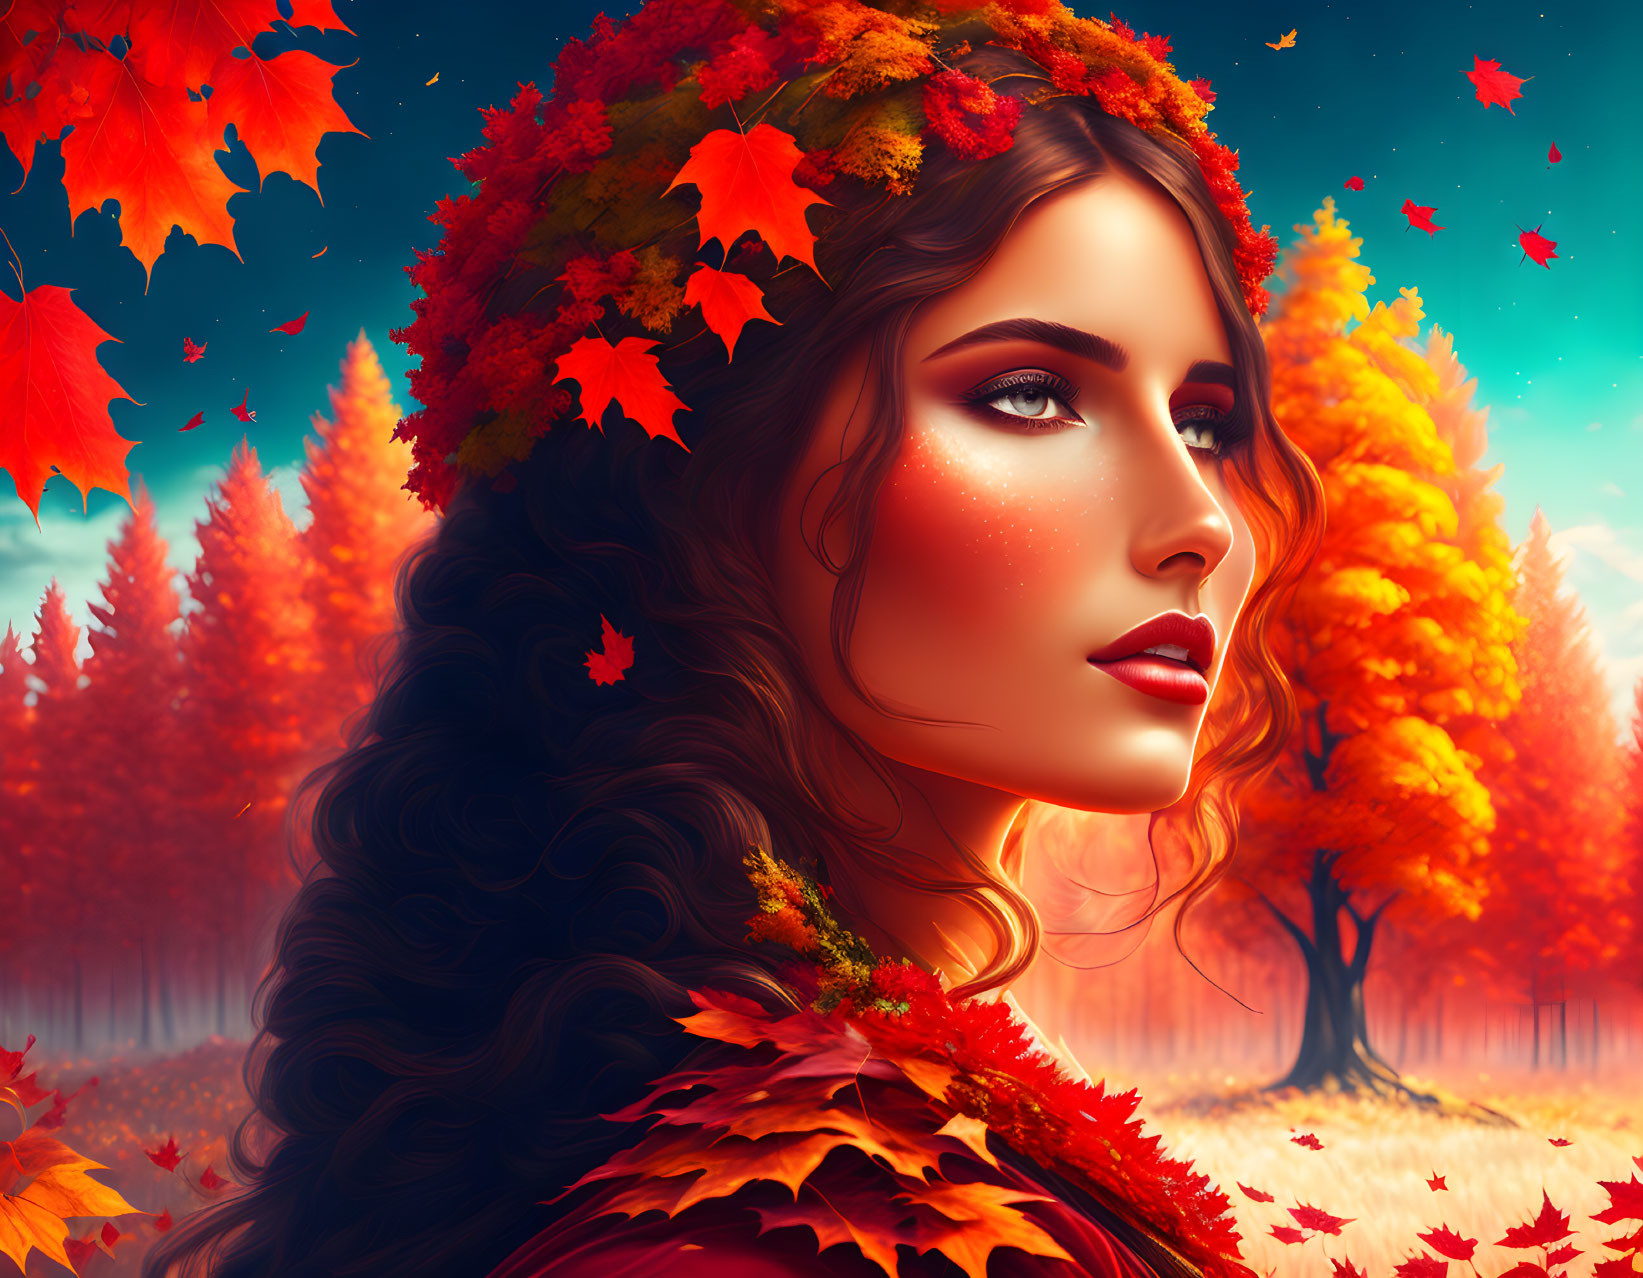 Autumn goddess